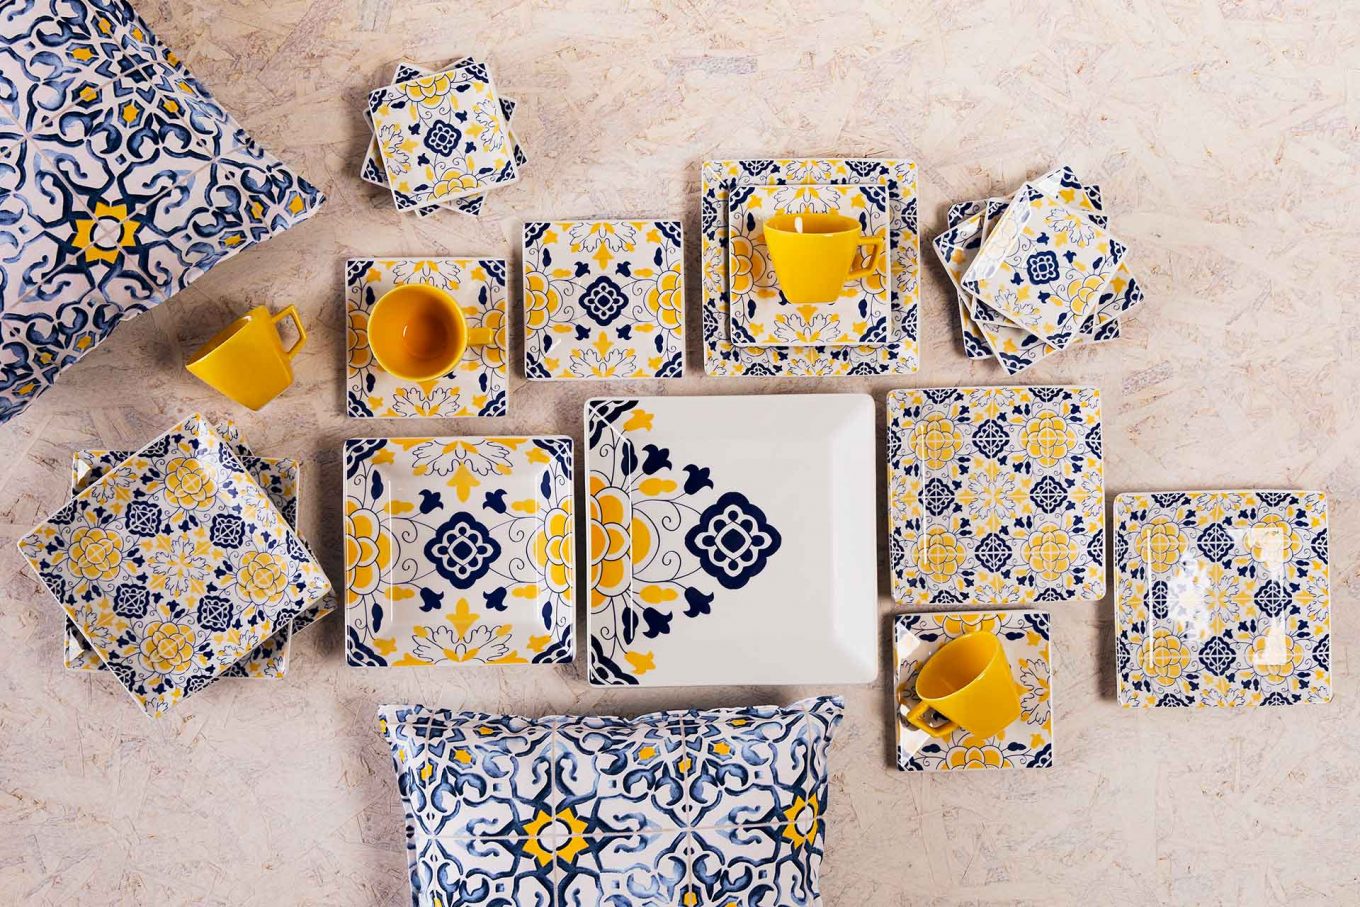 Imagem: Além de ficarem lindos na mesa, os pratos da coleção Quartier Sevilha também podem ser ótimos elementos decorativos para a parede, pois as estampas se completam, como verdadeiros azulejos!